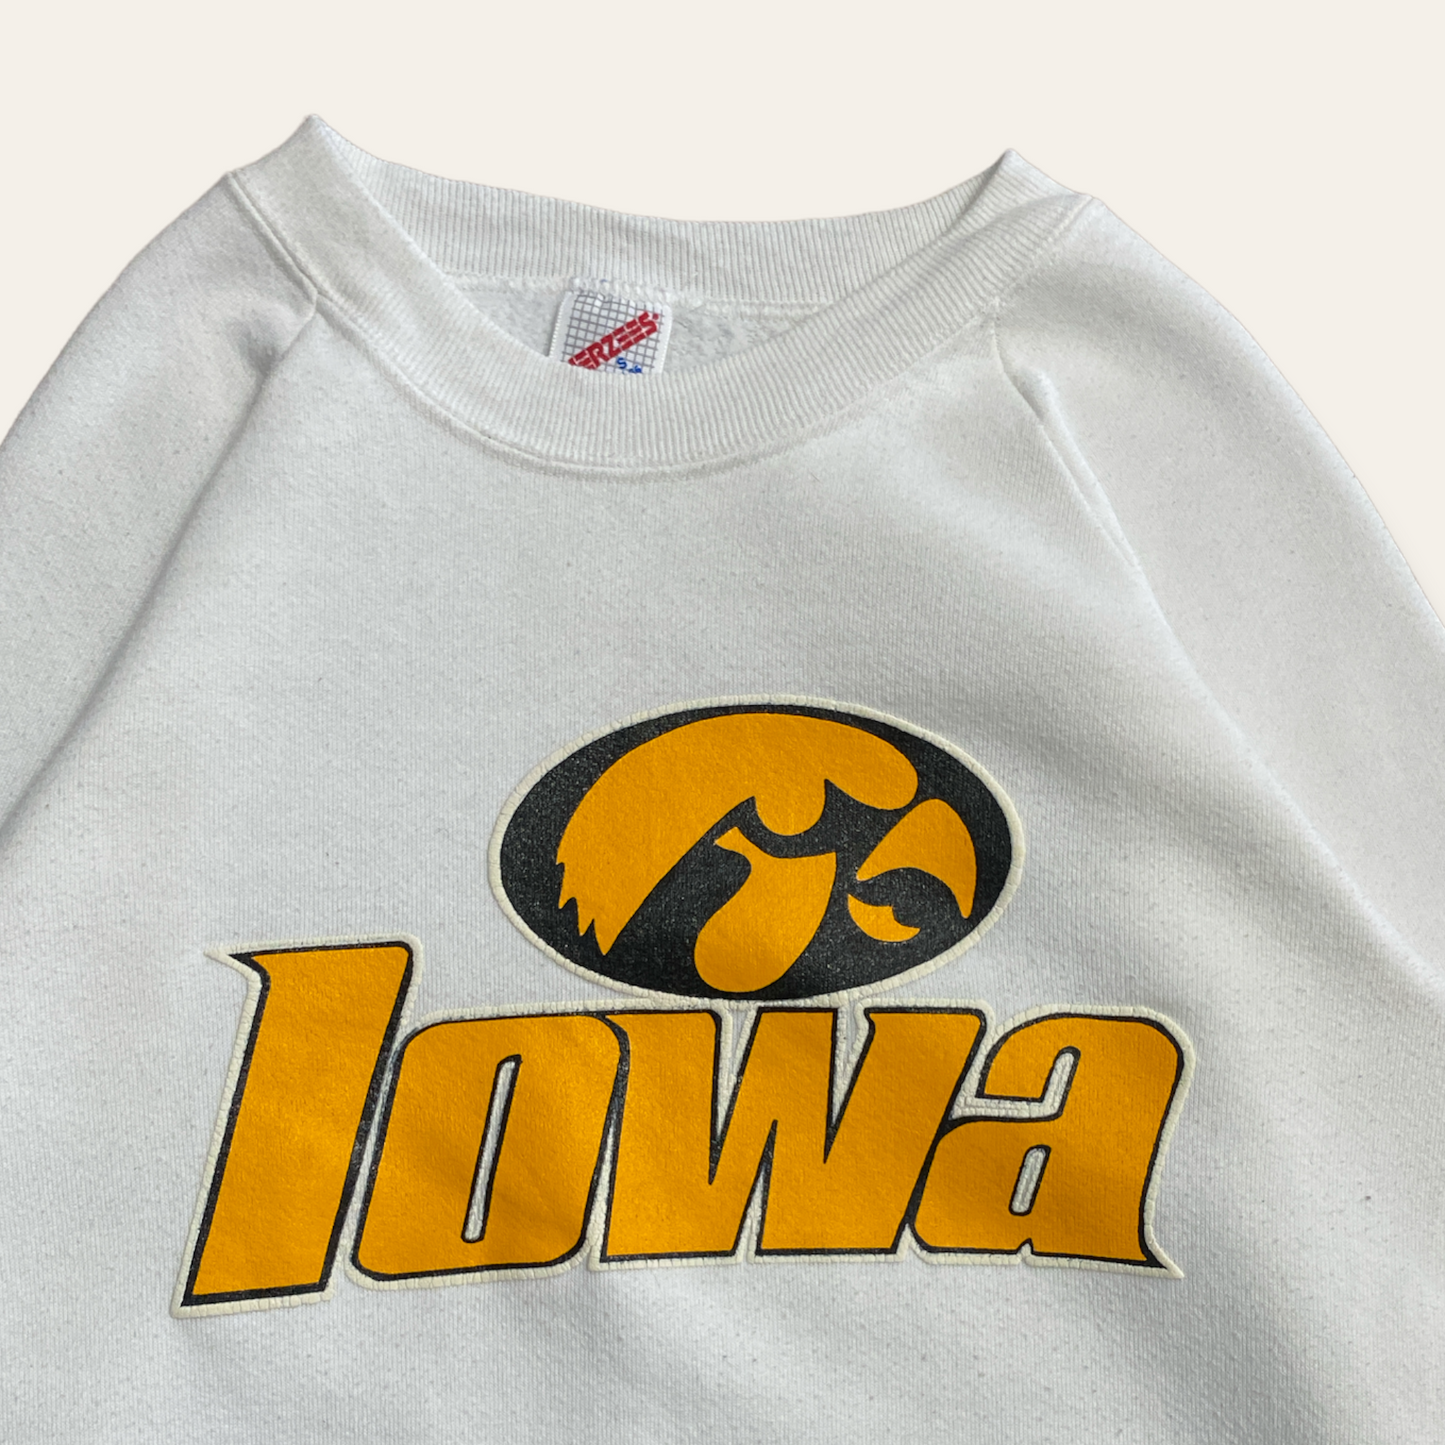 Iowa Sweater Size S